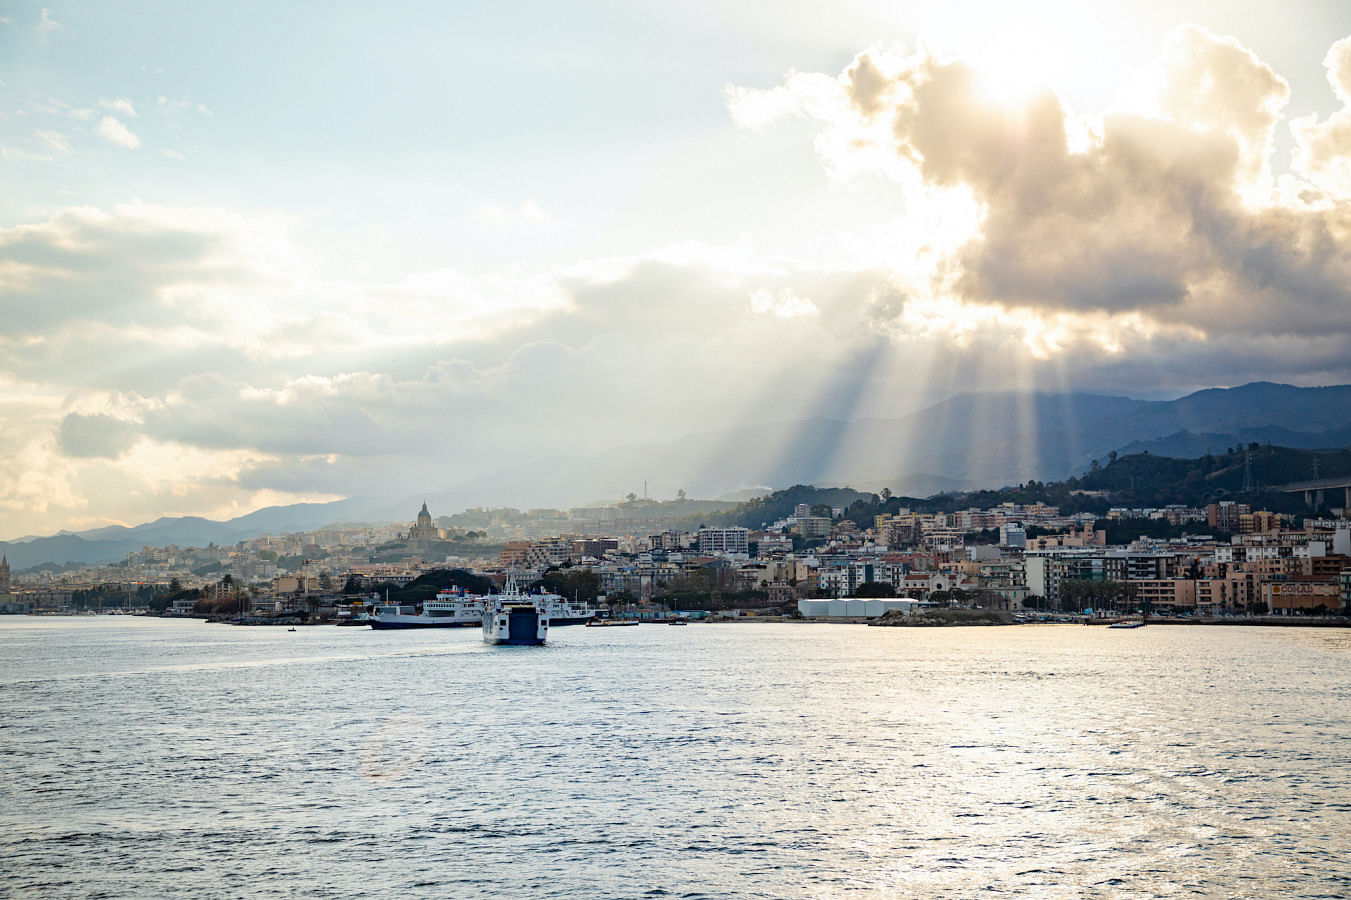 Alugar um barco em Messina